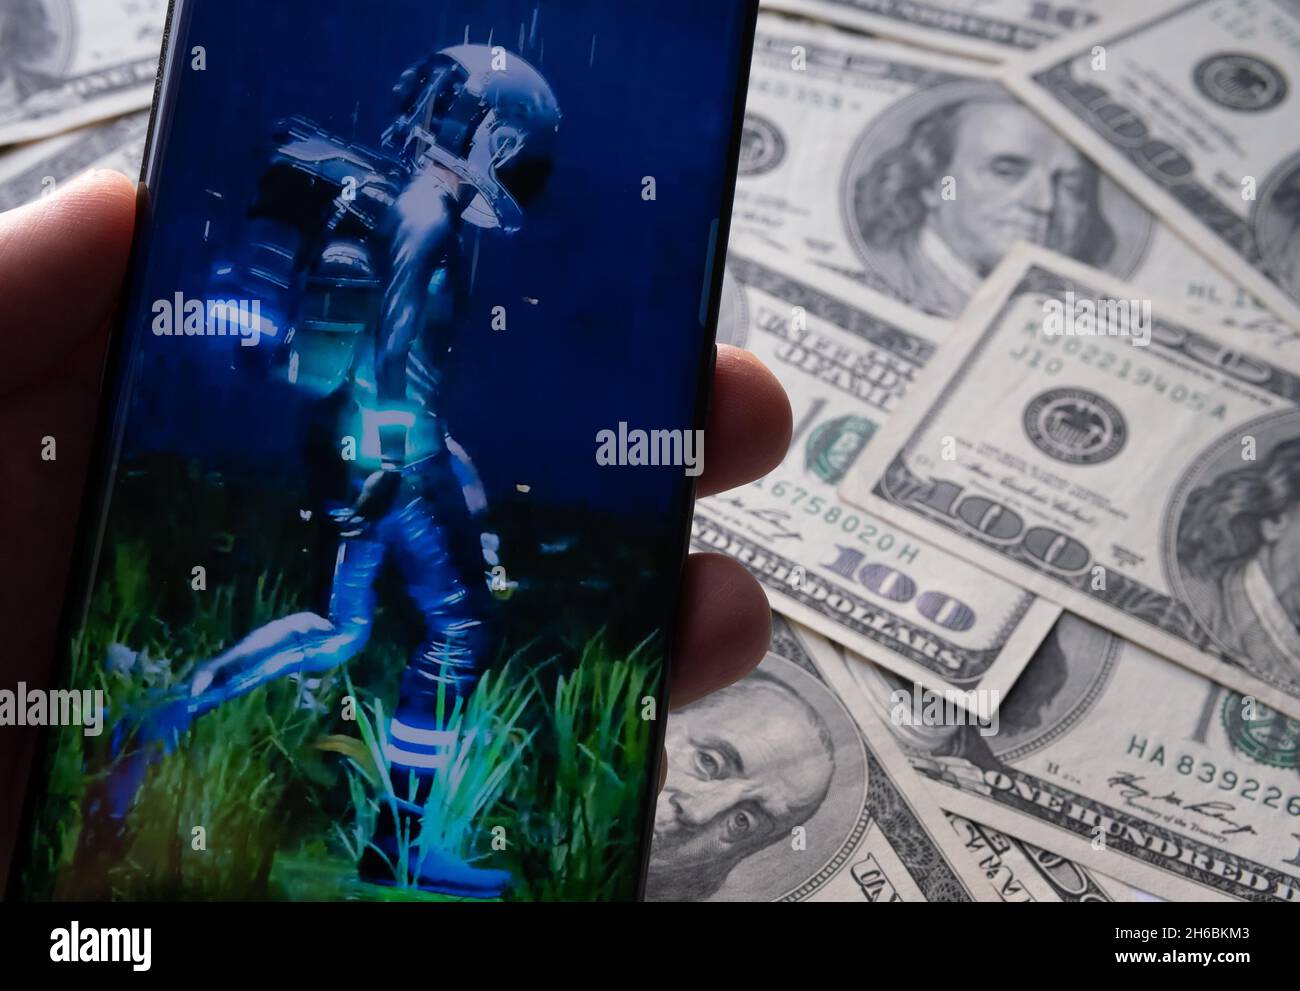 L'immagine del fotogramma NFT "UMANO" di Beeple è visibile sullo smartphone e sulle bollette del dollaro sullo sfondo sfocato. Stafford, Regno Unito, 14 novembre 2021. Foto Stock